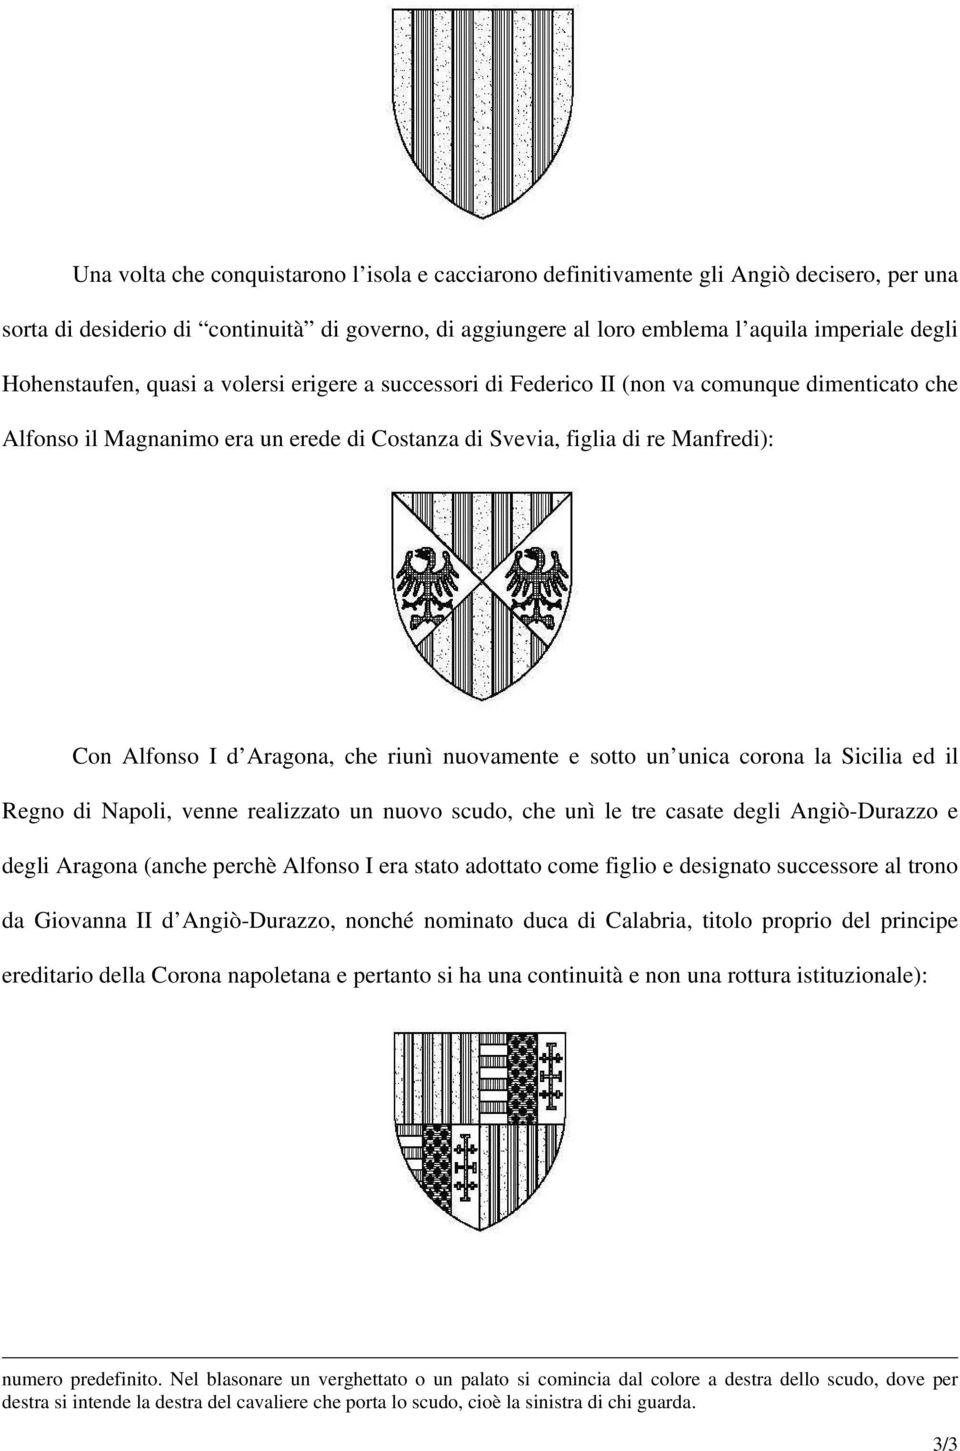 Aragona, che riunì nuovamente e sotto un unica corona la Sicilia ed il Regno di Napoli, venne realizzato un nuovo scudo, che unì le tre casate degli Angiò-Durazzo e degli Aragona (anche perchè